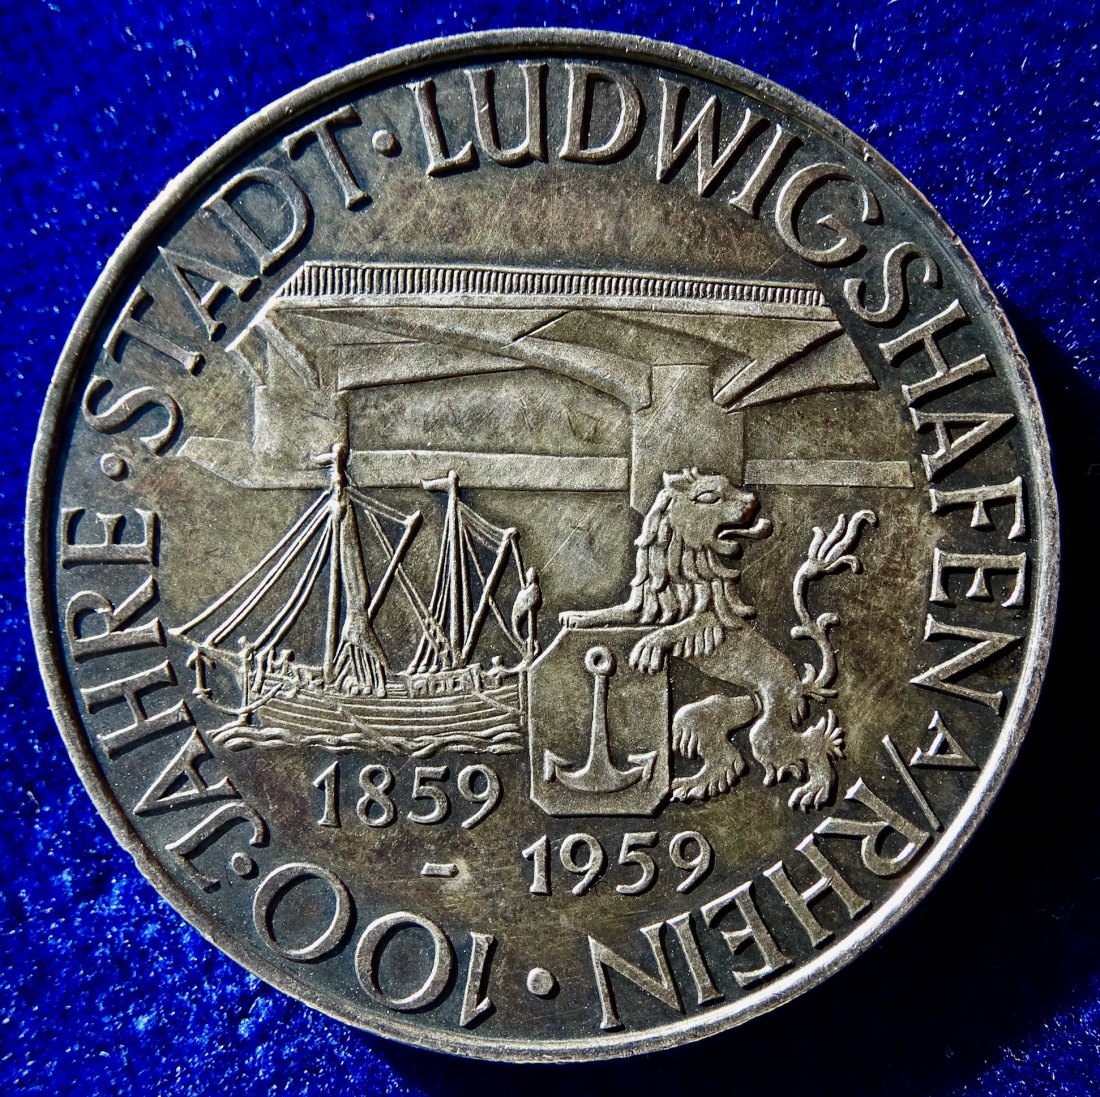  Ludwigshafen am Rhein 1859 - 1959 Silber- Medaille 100 Jahre Stadt der Chemie   